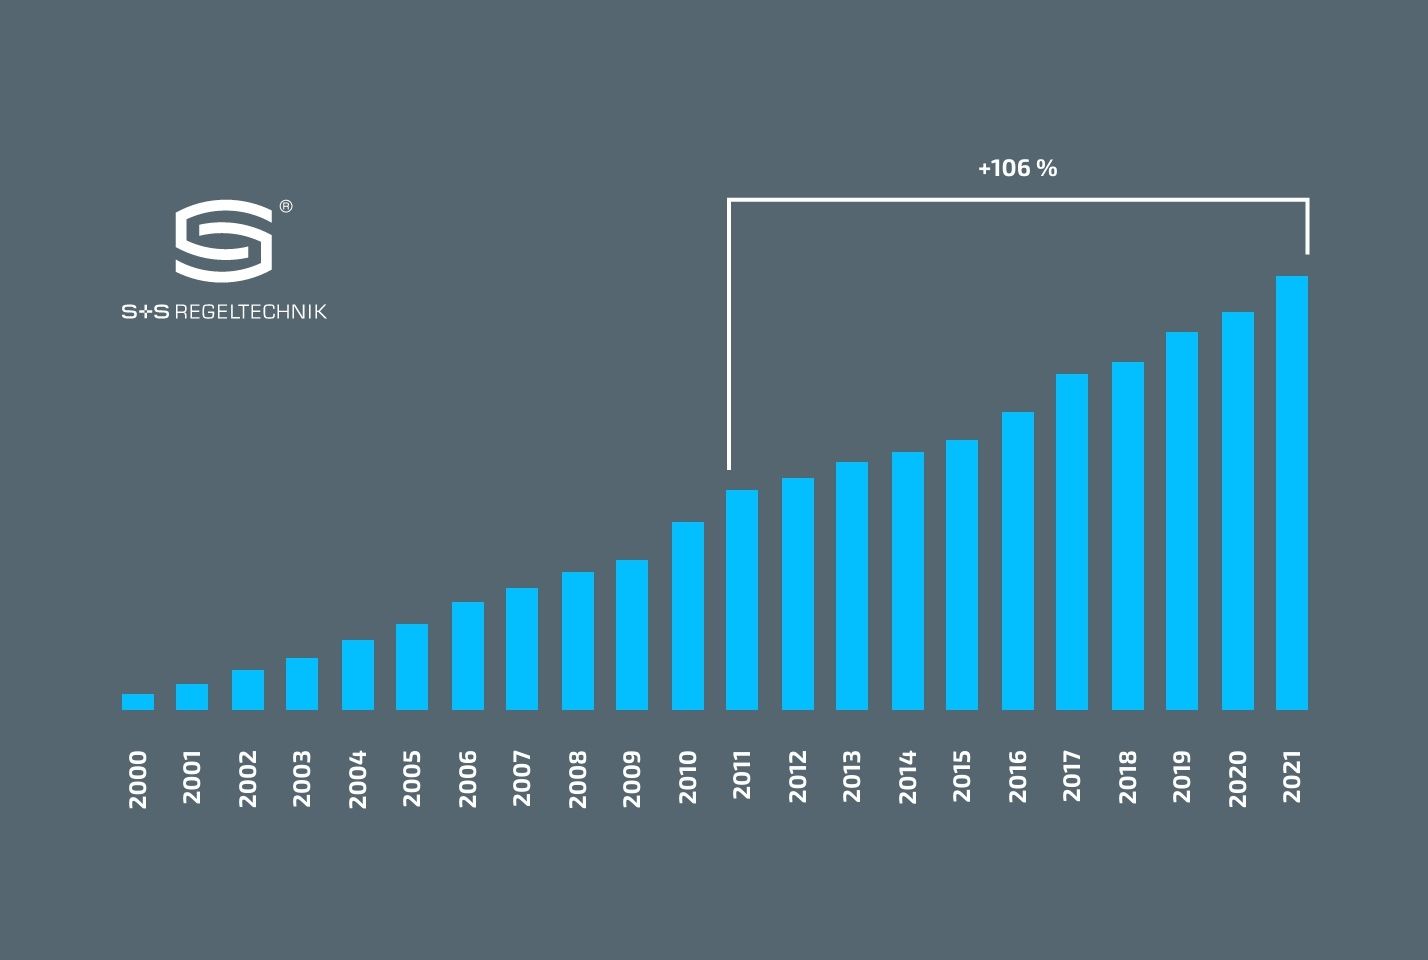 Диаграмма, показывающая рост оборота S+S с года основания 2000 до 2021 года